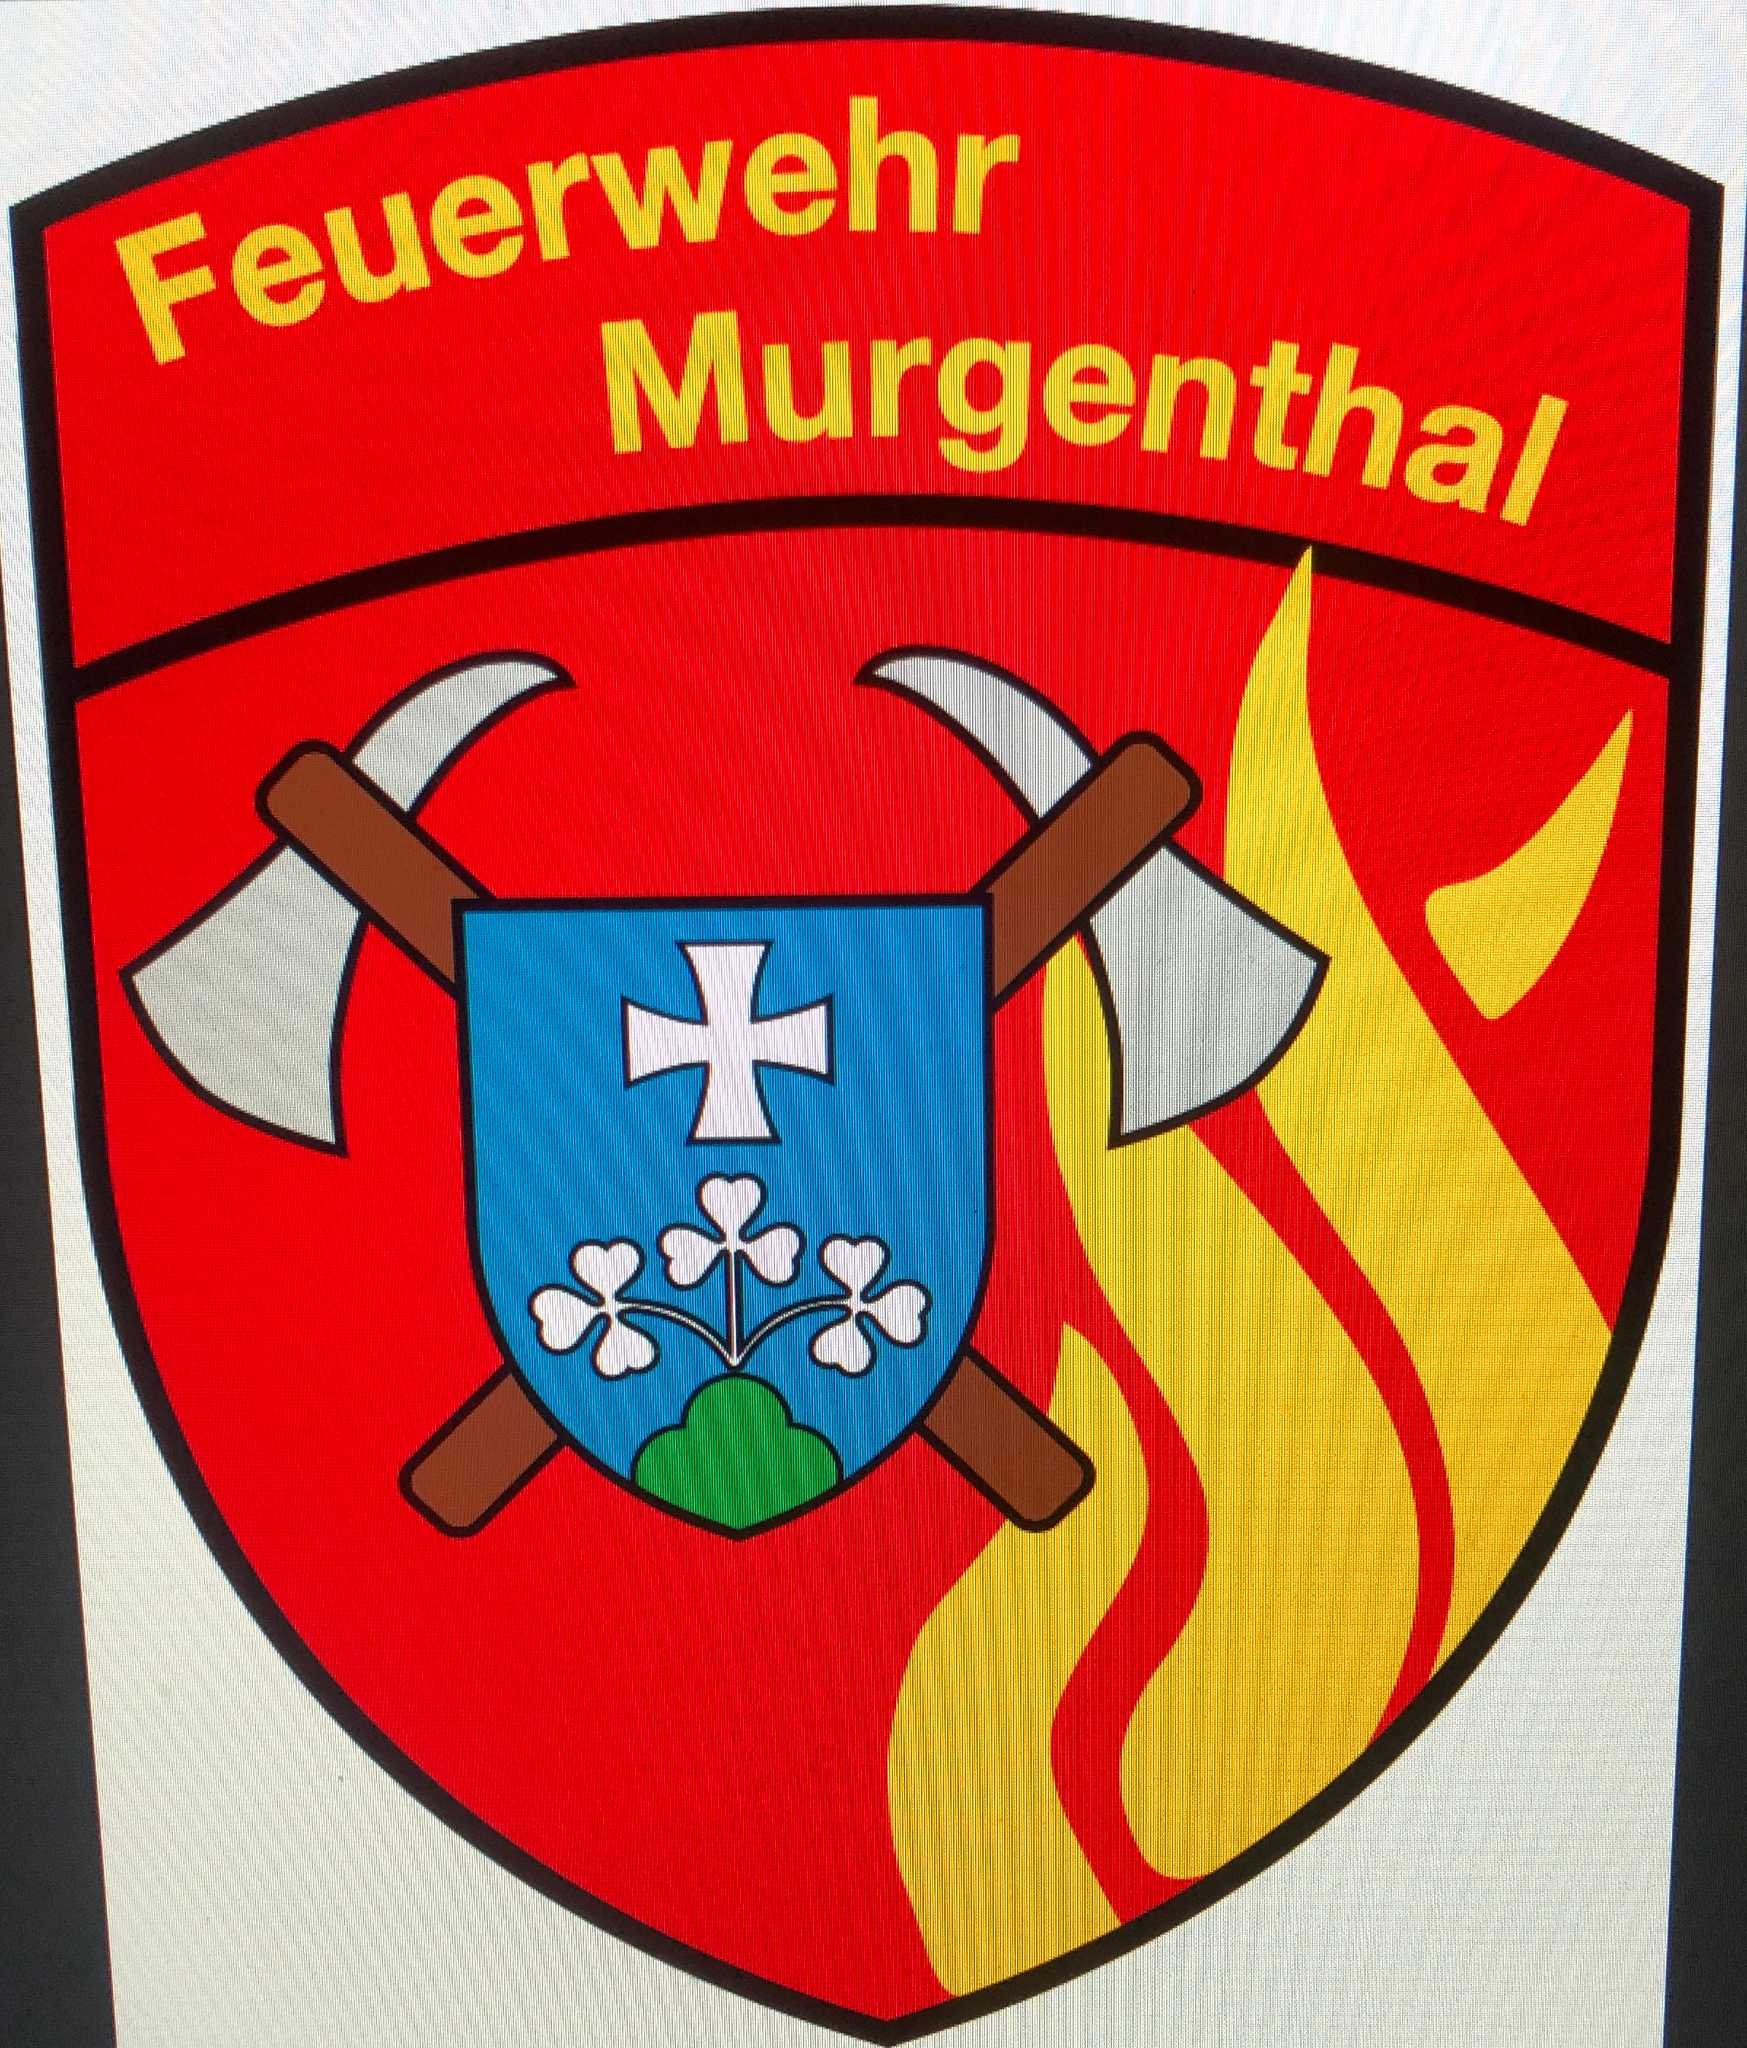 Feuerwehr Murgenthal